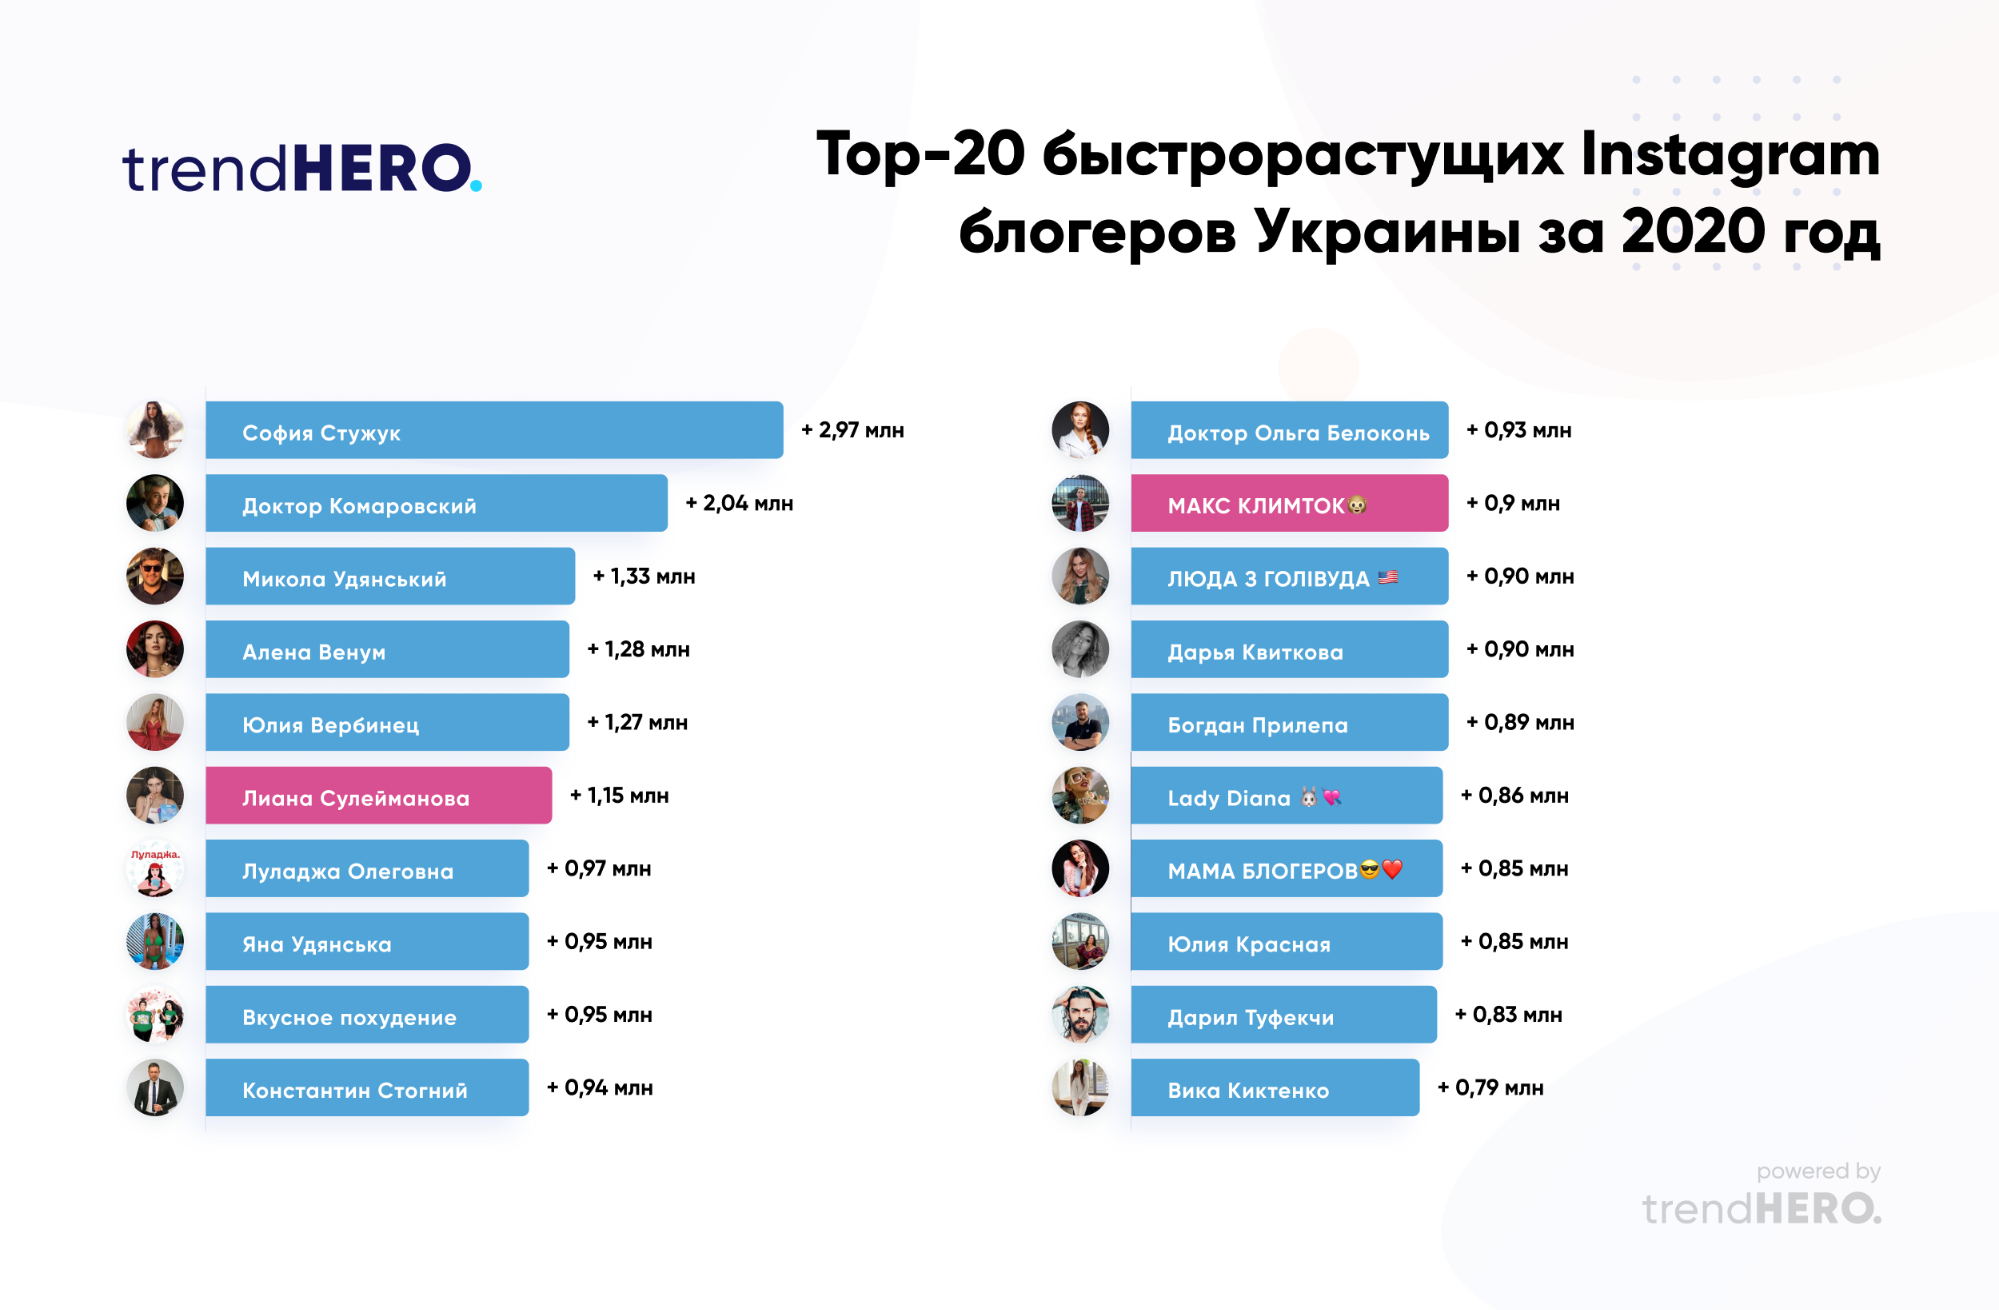 Топ-20 швидкозростаючих українських блогерів Instagram в 2020 році - community, social-media, news, online-marketing